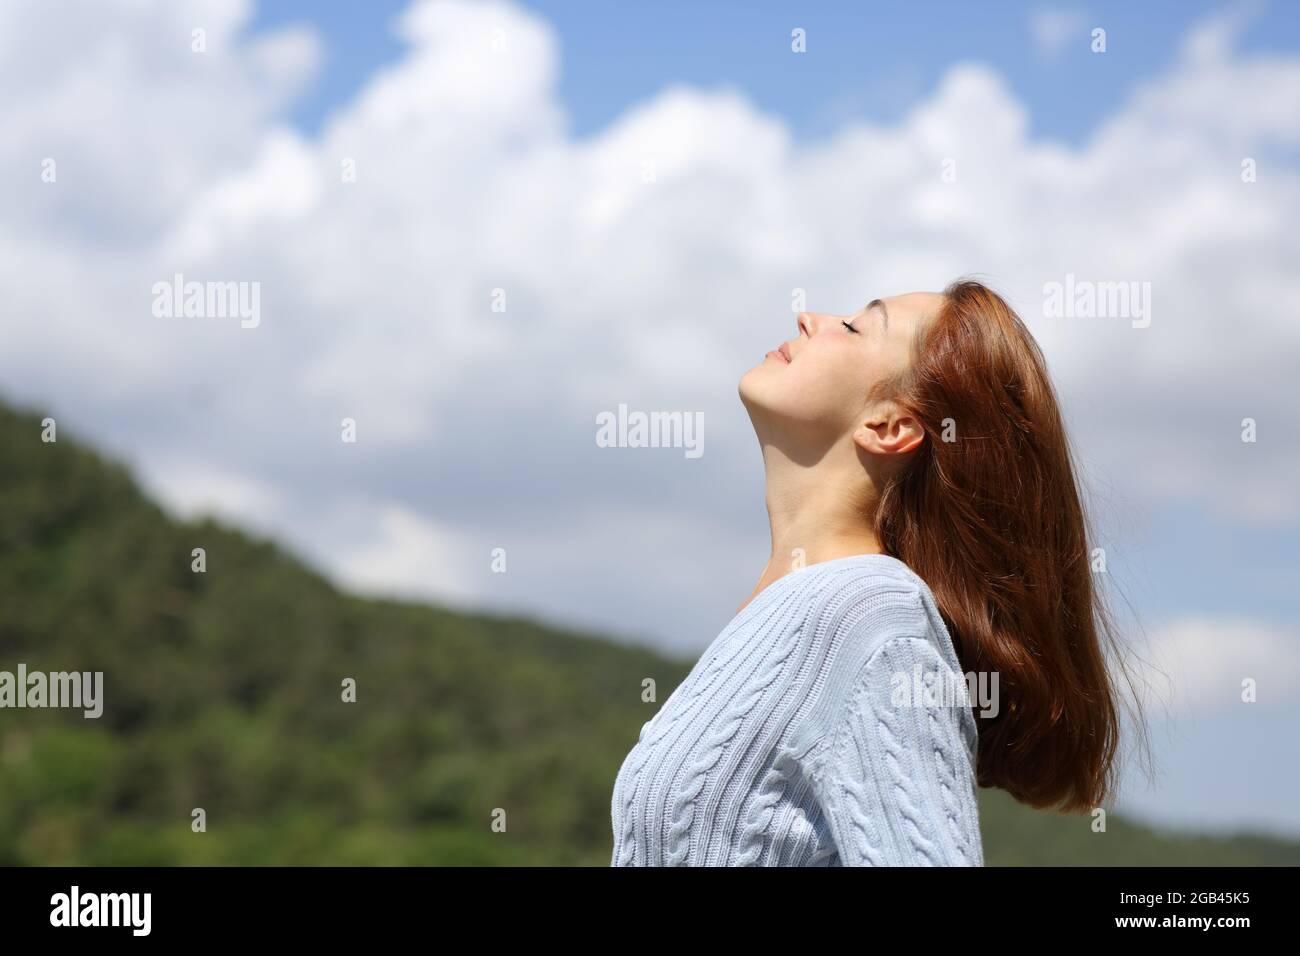 Profil d'une femme respirant de l'air frais dans la montagne avec un ciel nuageux Banque D'Images